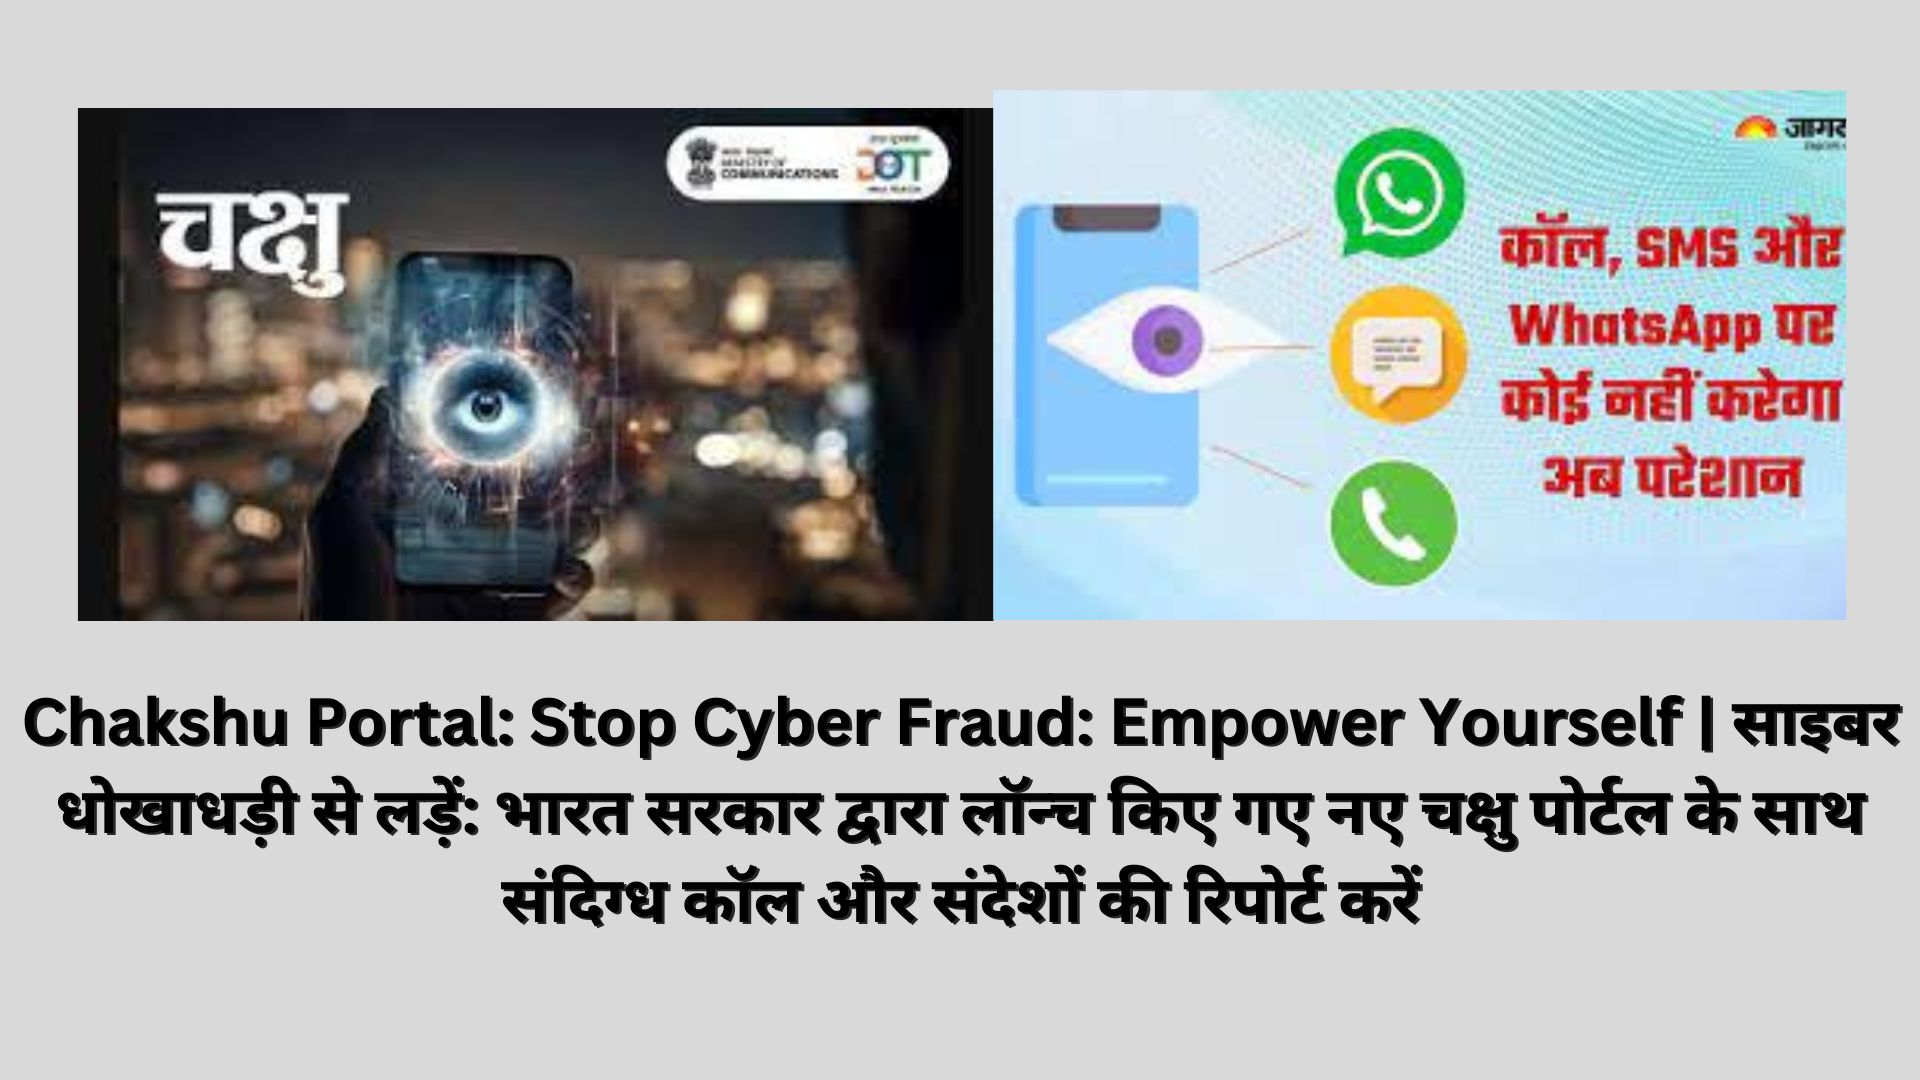 Chakshu Portal: Stop Cyber Fraud: Empower Yourself | साइबर धोखाधड़ी से लड़ें: भारत सरकार द्वारा लॉन्च किए गए नए चक्षु पोर्टल के साथ संदिग्ध कॉल और संदेशों की रिपोर्ट करें